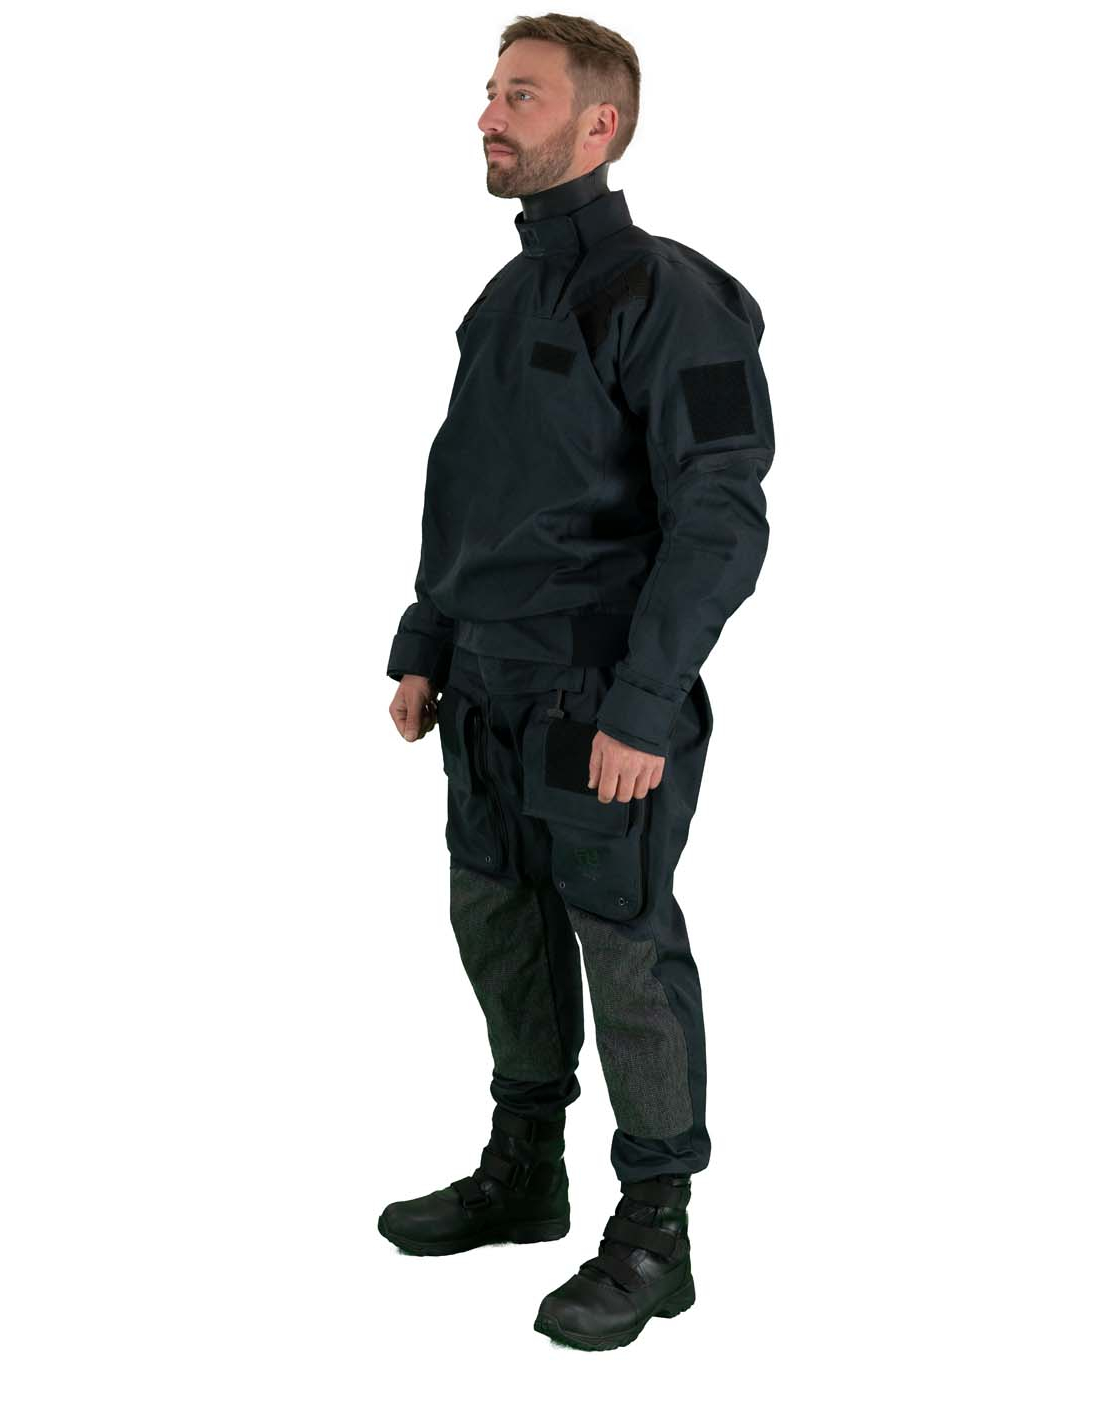 SeaRescue Tactical Telescopic Suit